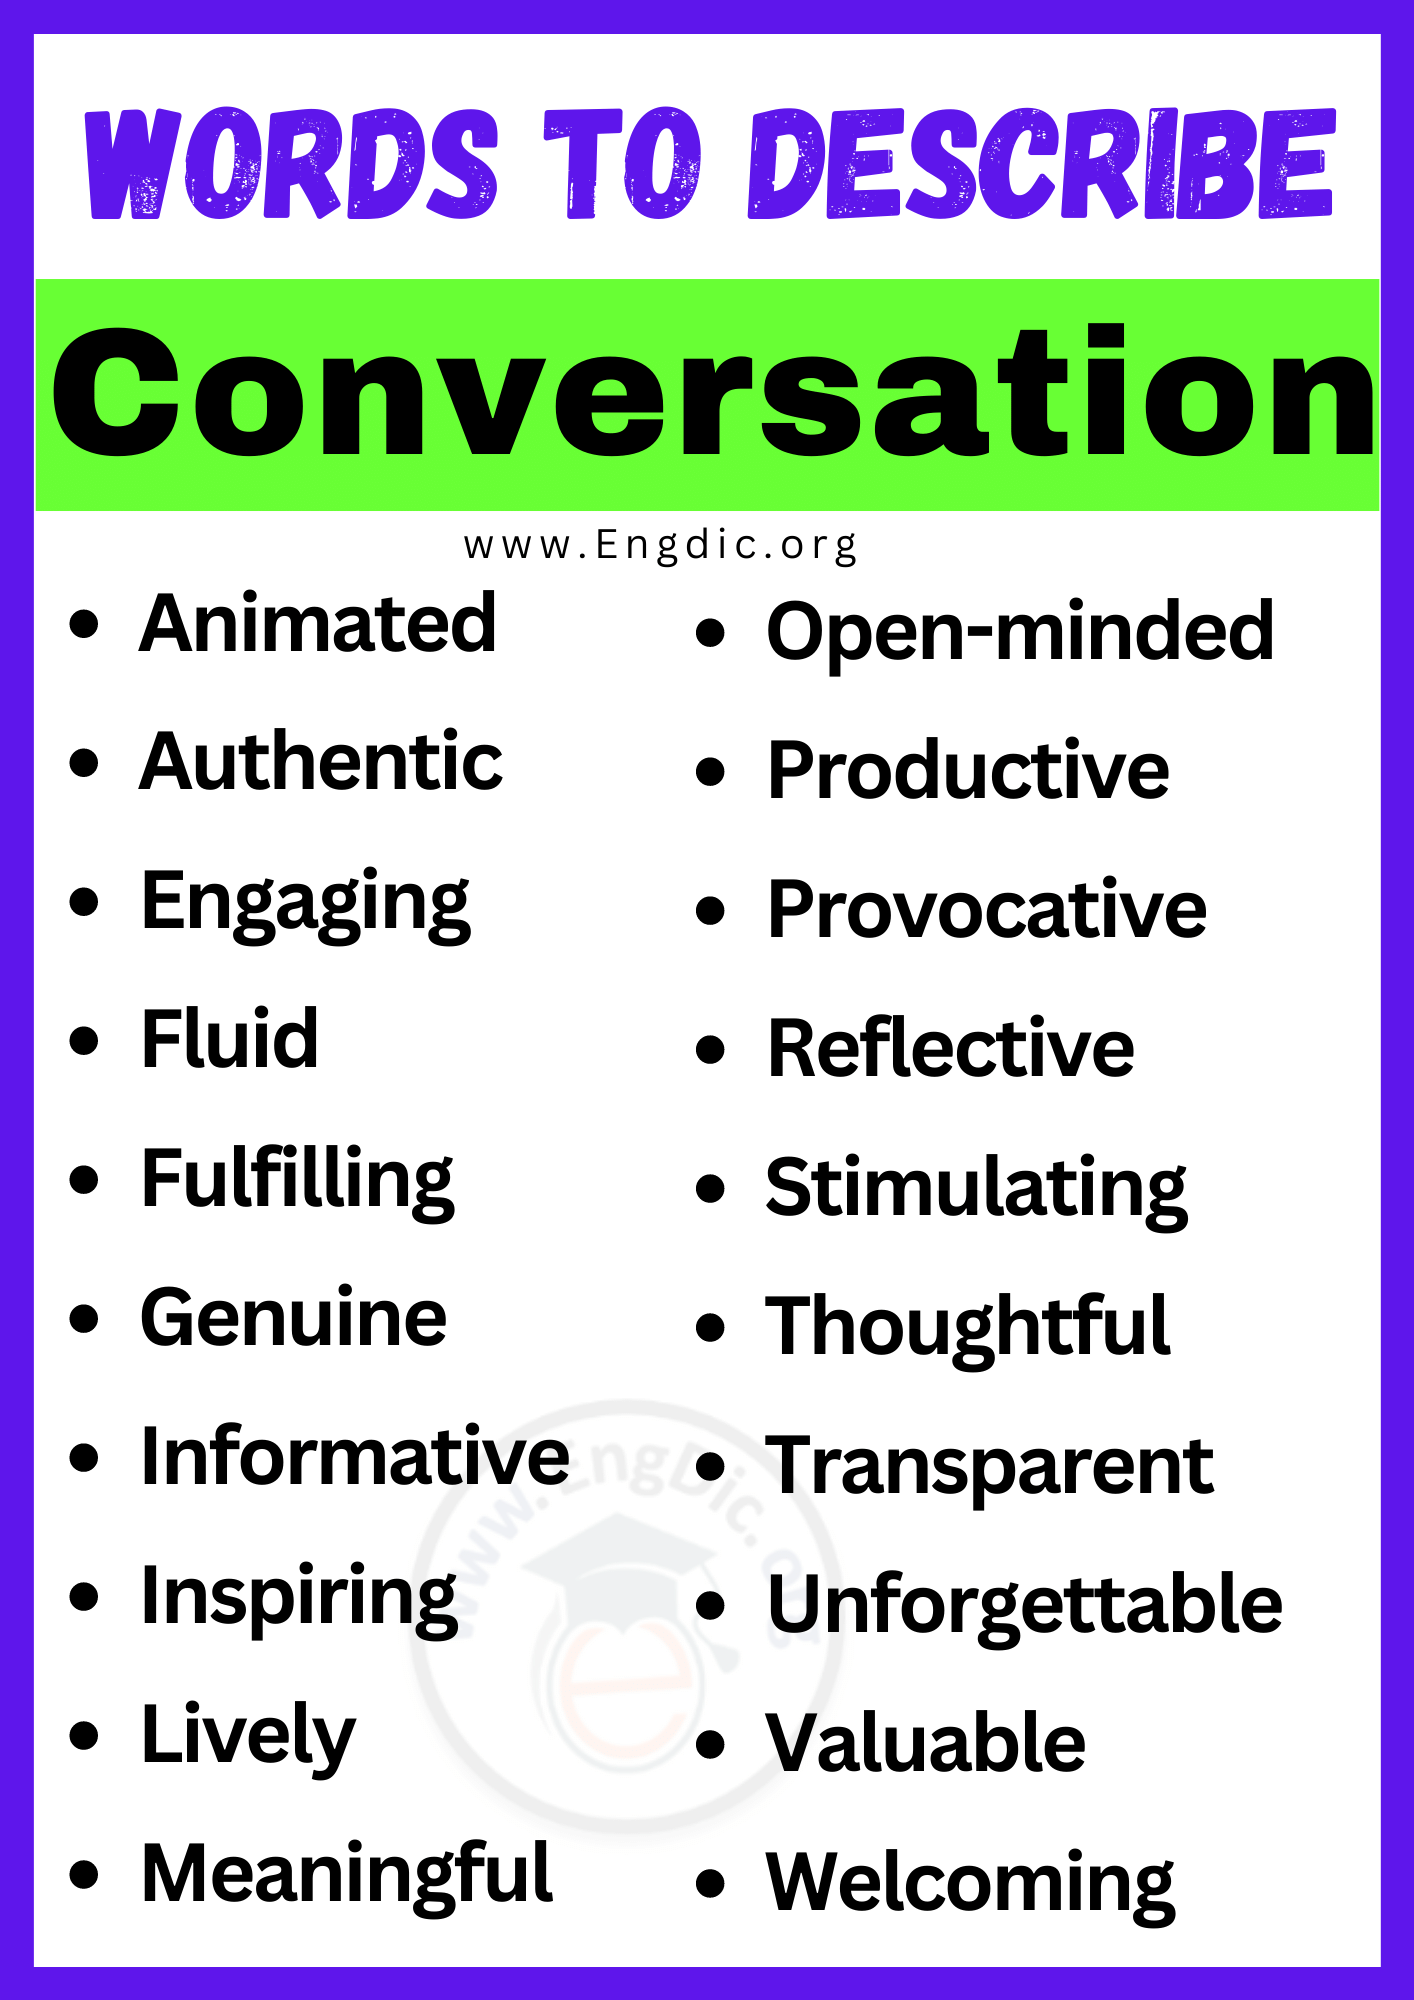 Words to Describe Conversation